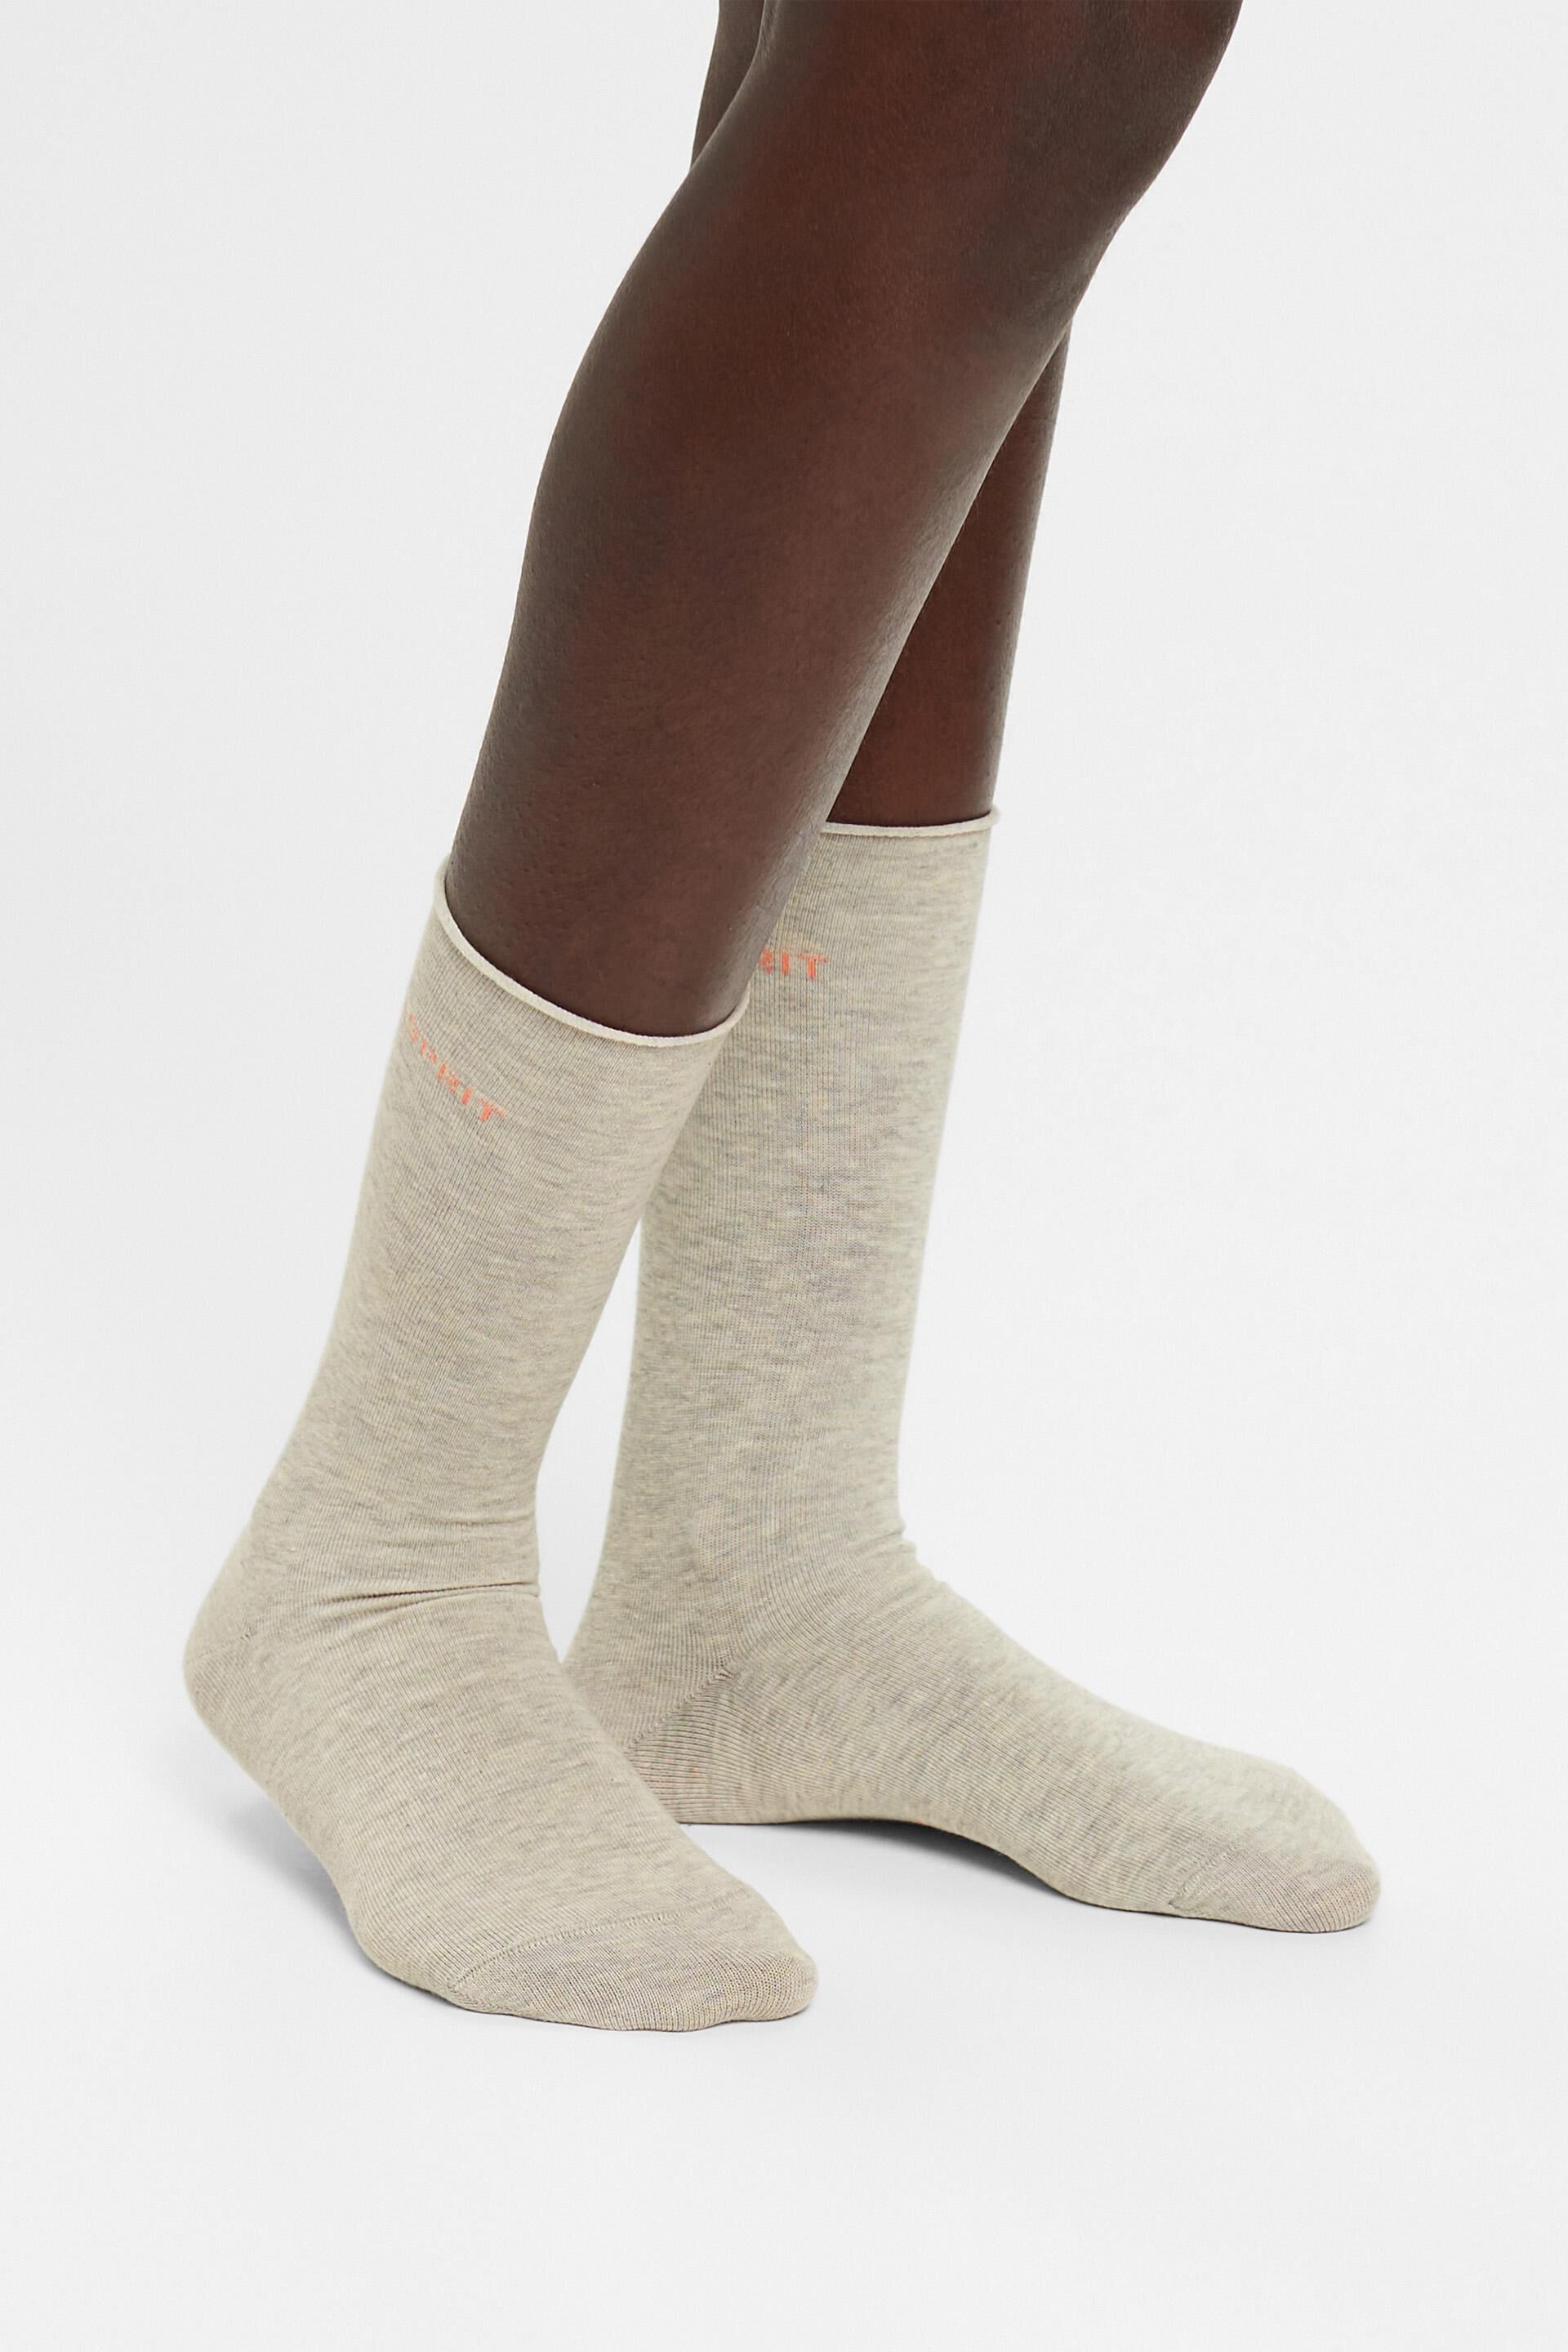 Esprit mit Bio-Baumwolle Rollkanten, Socken 2er-Pack